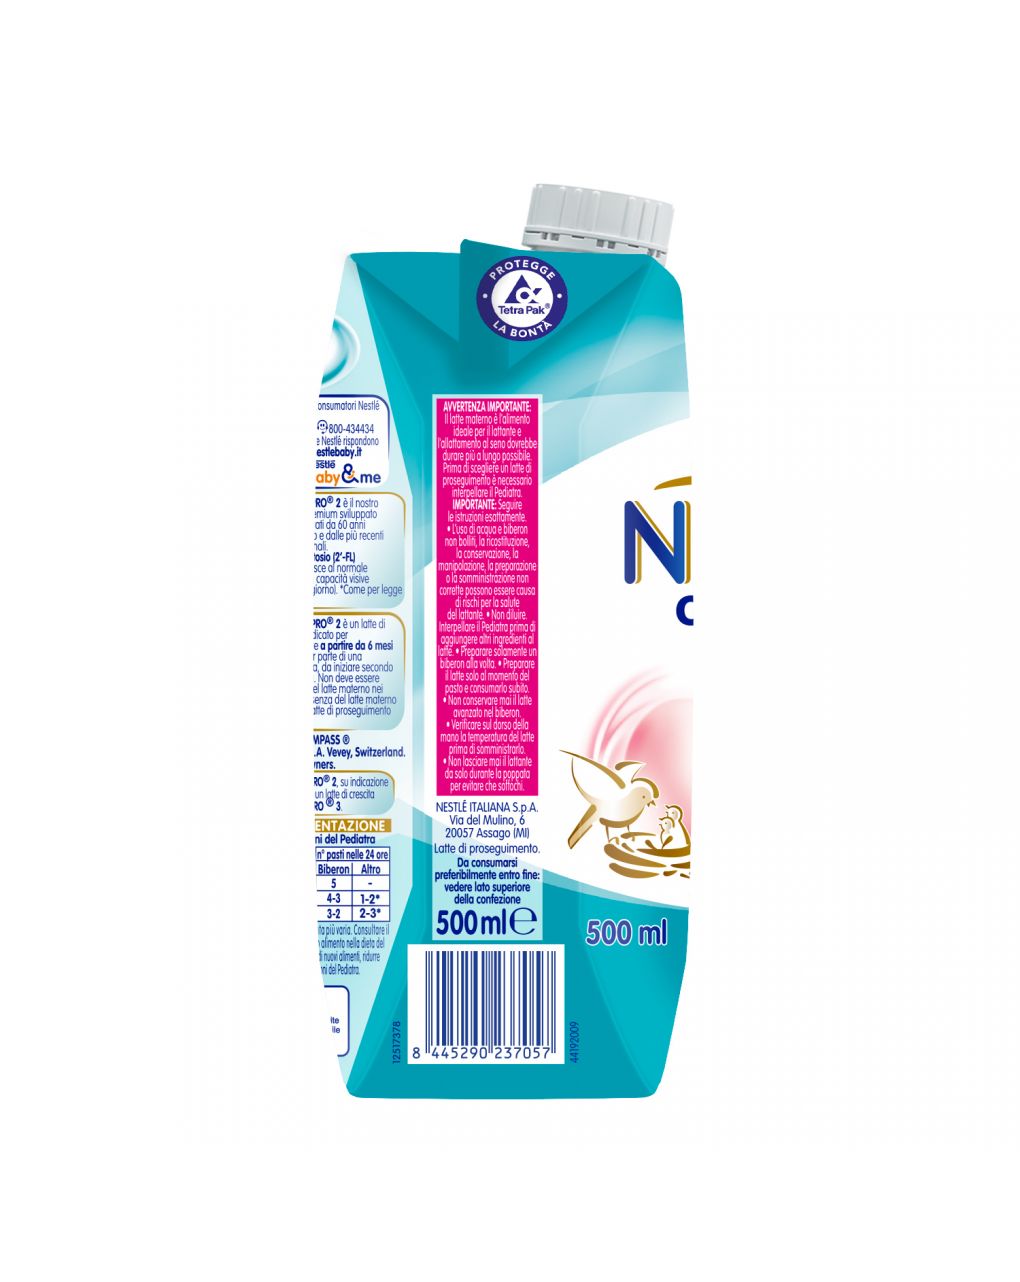 Nidina optipro 6-12 mesi latte di proseguimento liquido 500ml - nestlé - Nestlé